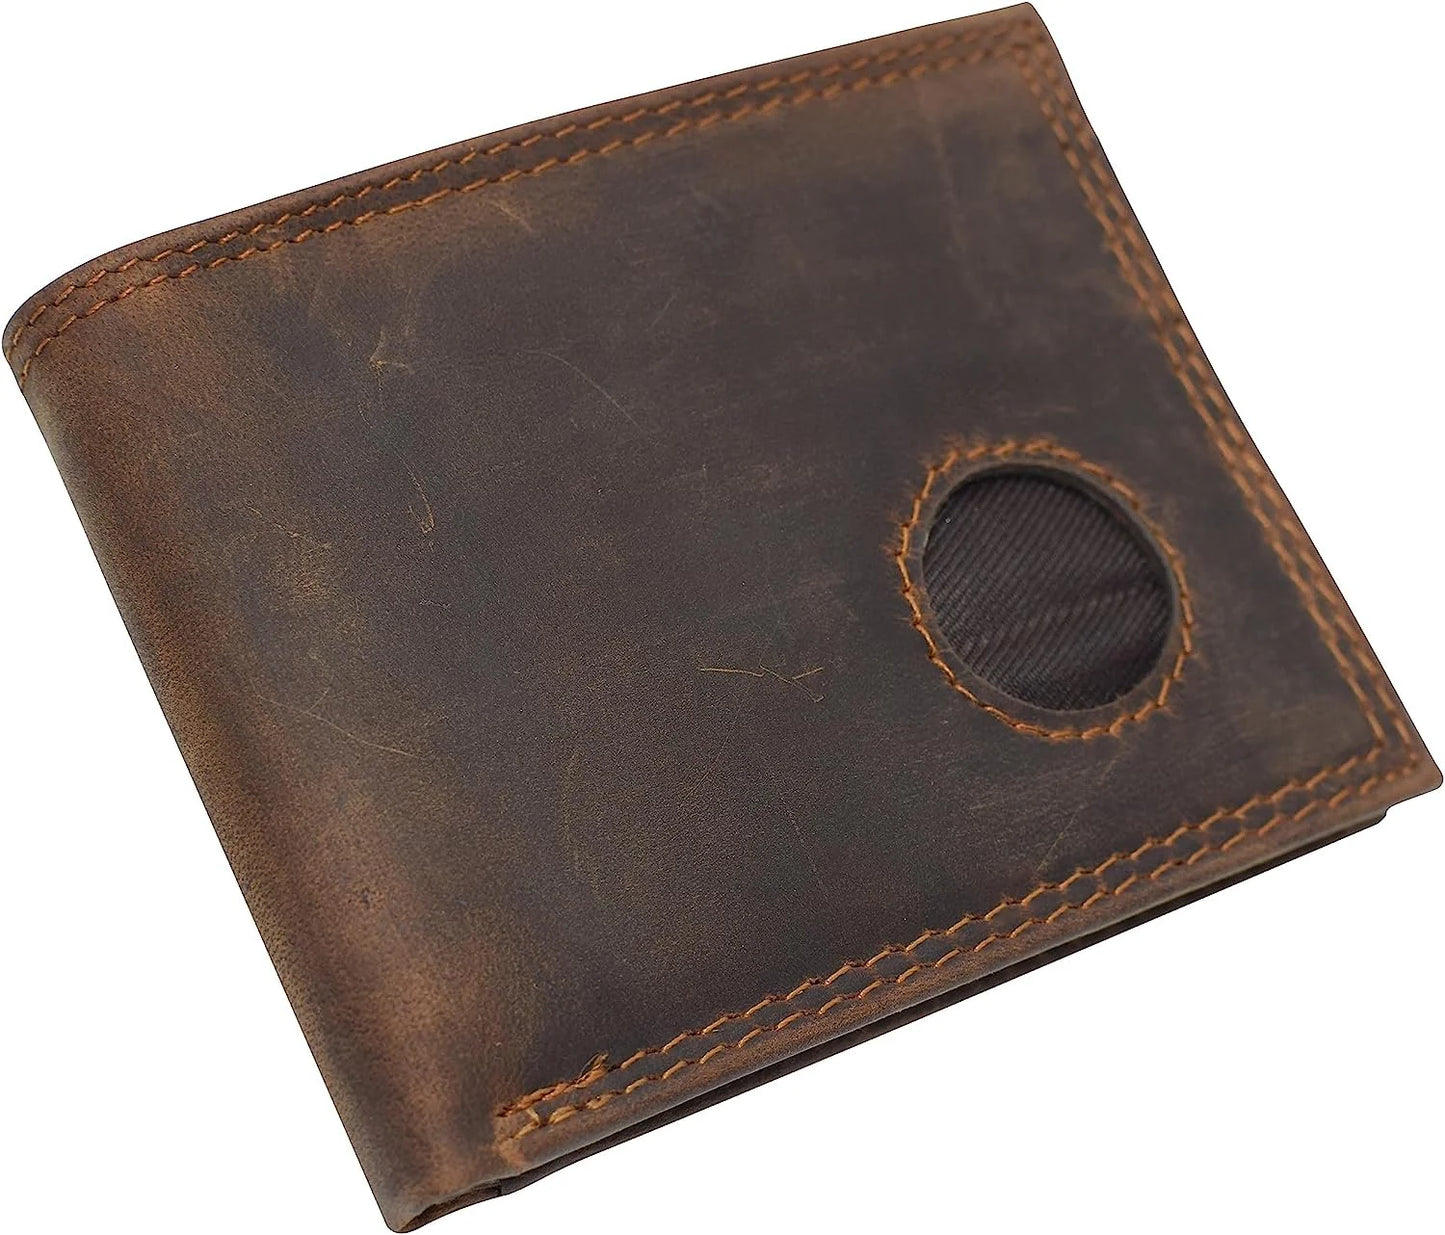 Vintage Leather Men's Bifold Wallet Credit Card Holder Airtag Case